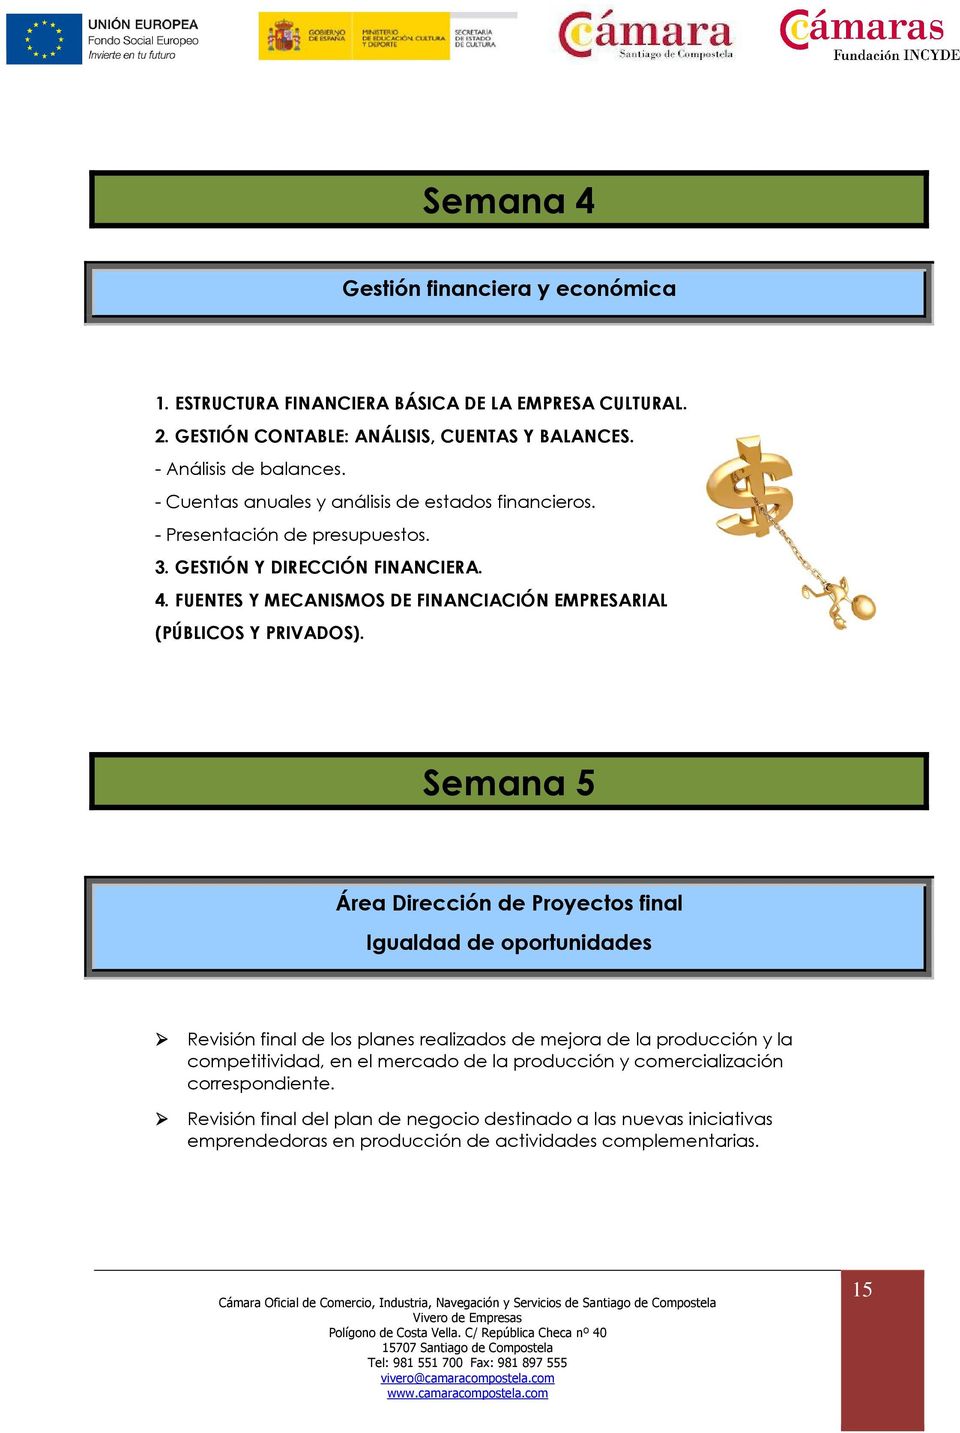 FUENTES Y MECANISMOS DE FINANCIACIÓN EMPRESARIAL (PÚBLICOS Y PRIVADOS).